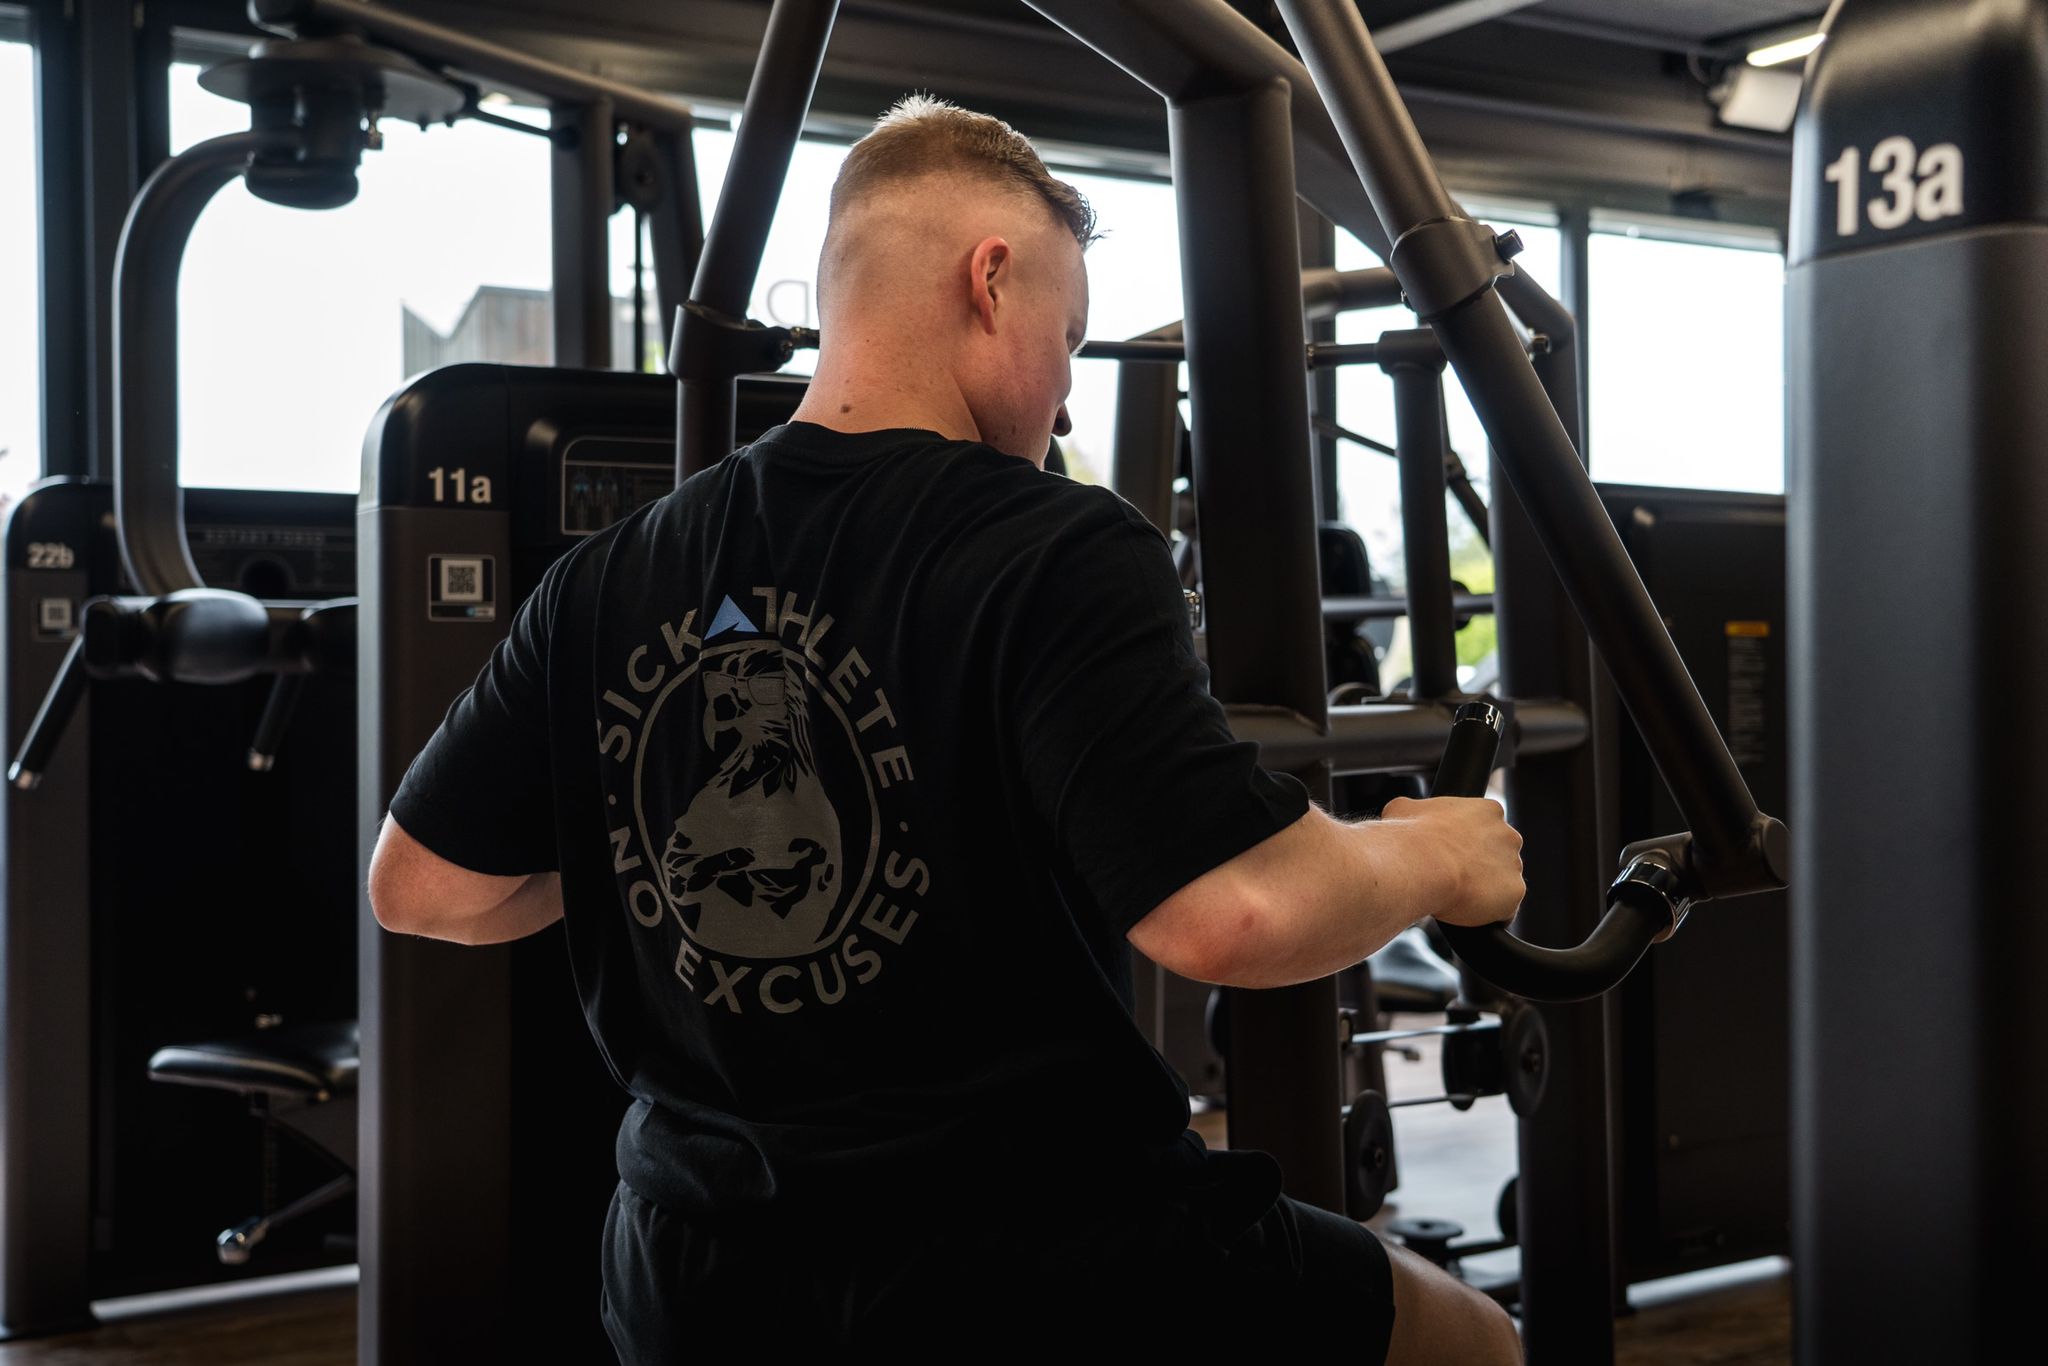 Muskulöser Athlet trainiert im Gym seinen Rücken und trägt dabei sein SICKATHLETE Purpose T-shirt auf dem ein Adler zu sehen ist.